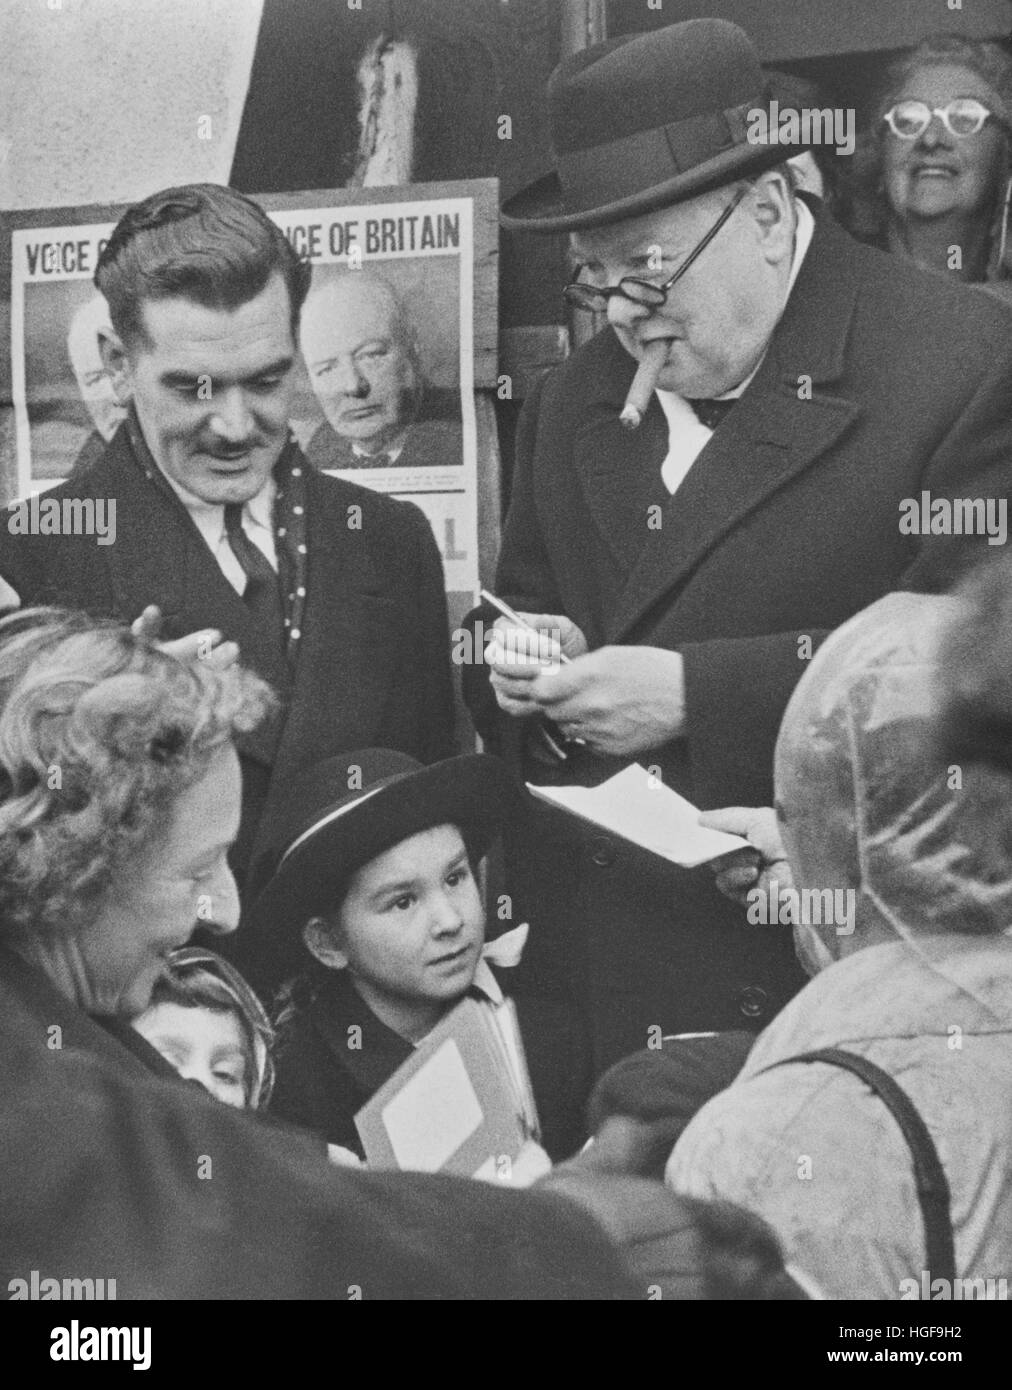 Winston Churchill signe des autographes à Devonport, février 1950 Banque D'Images